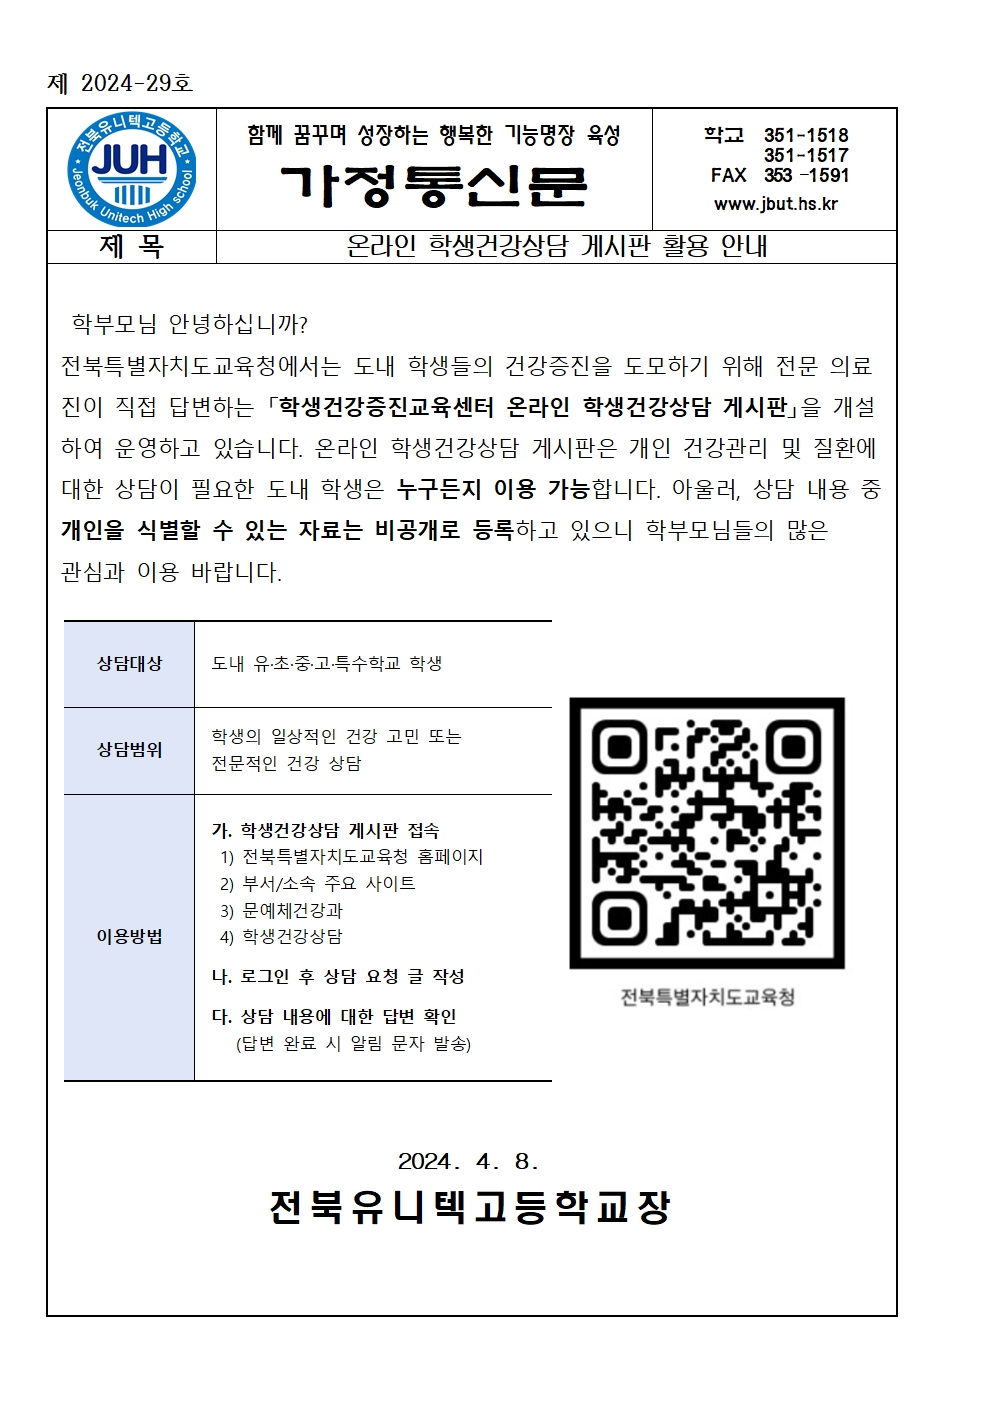 온라인 학생건강상담 게시판 활용 안내(2024-29)001